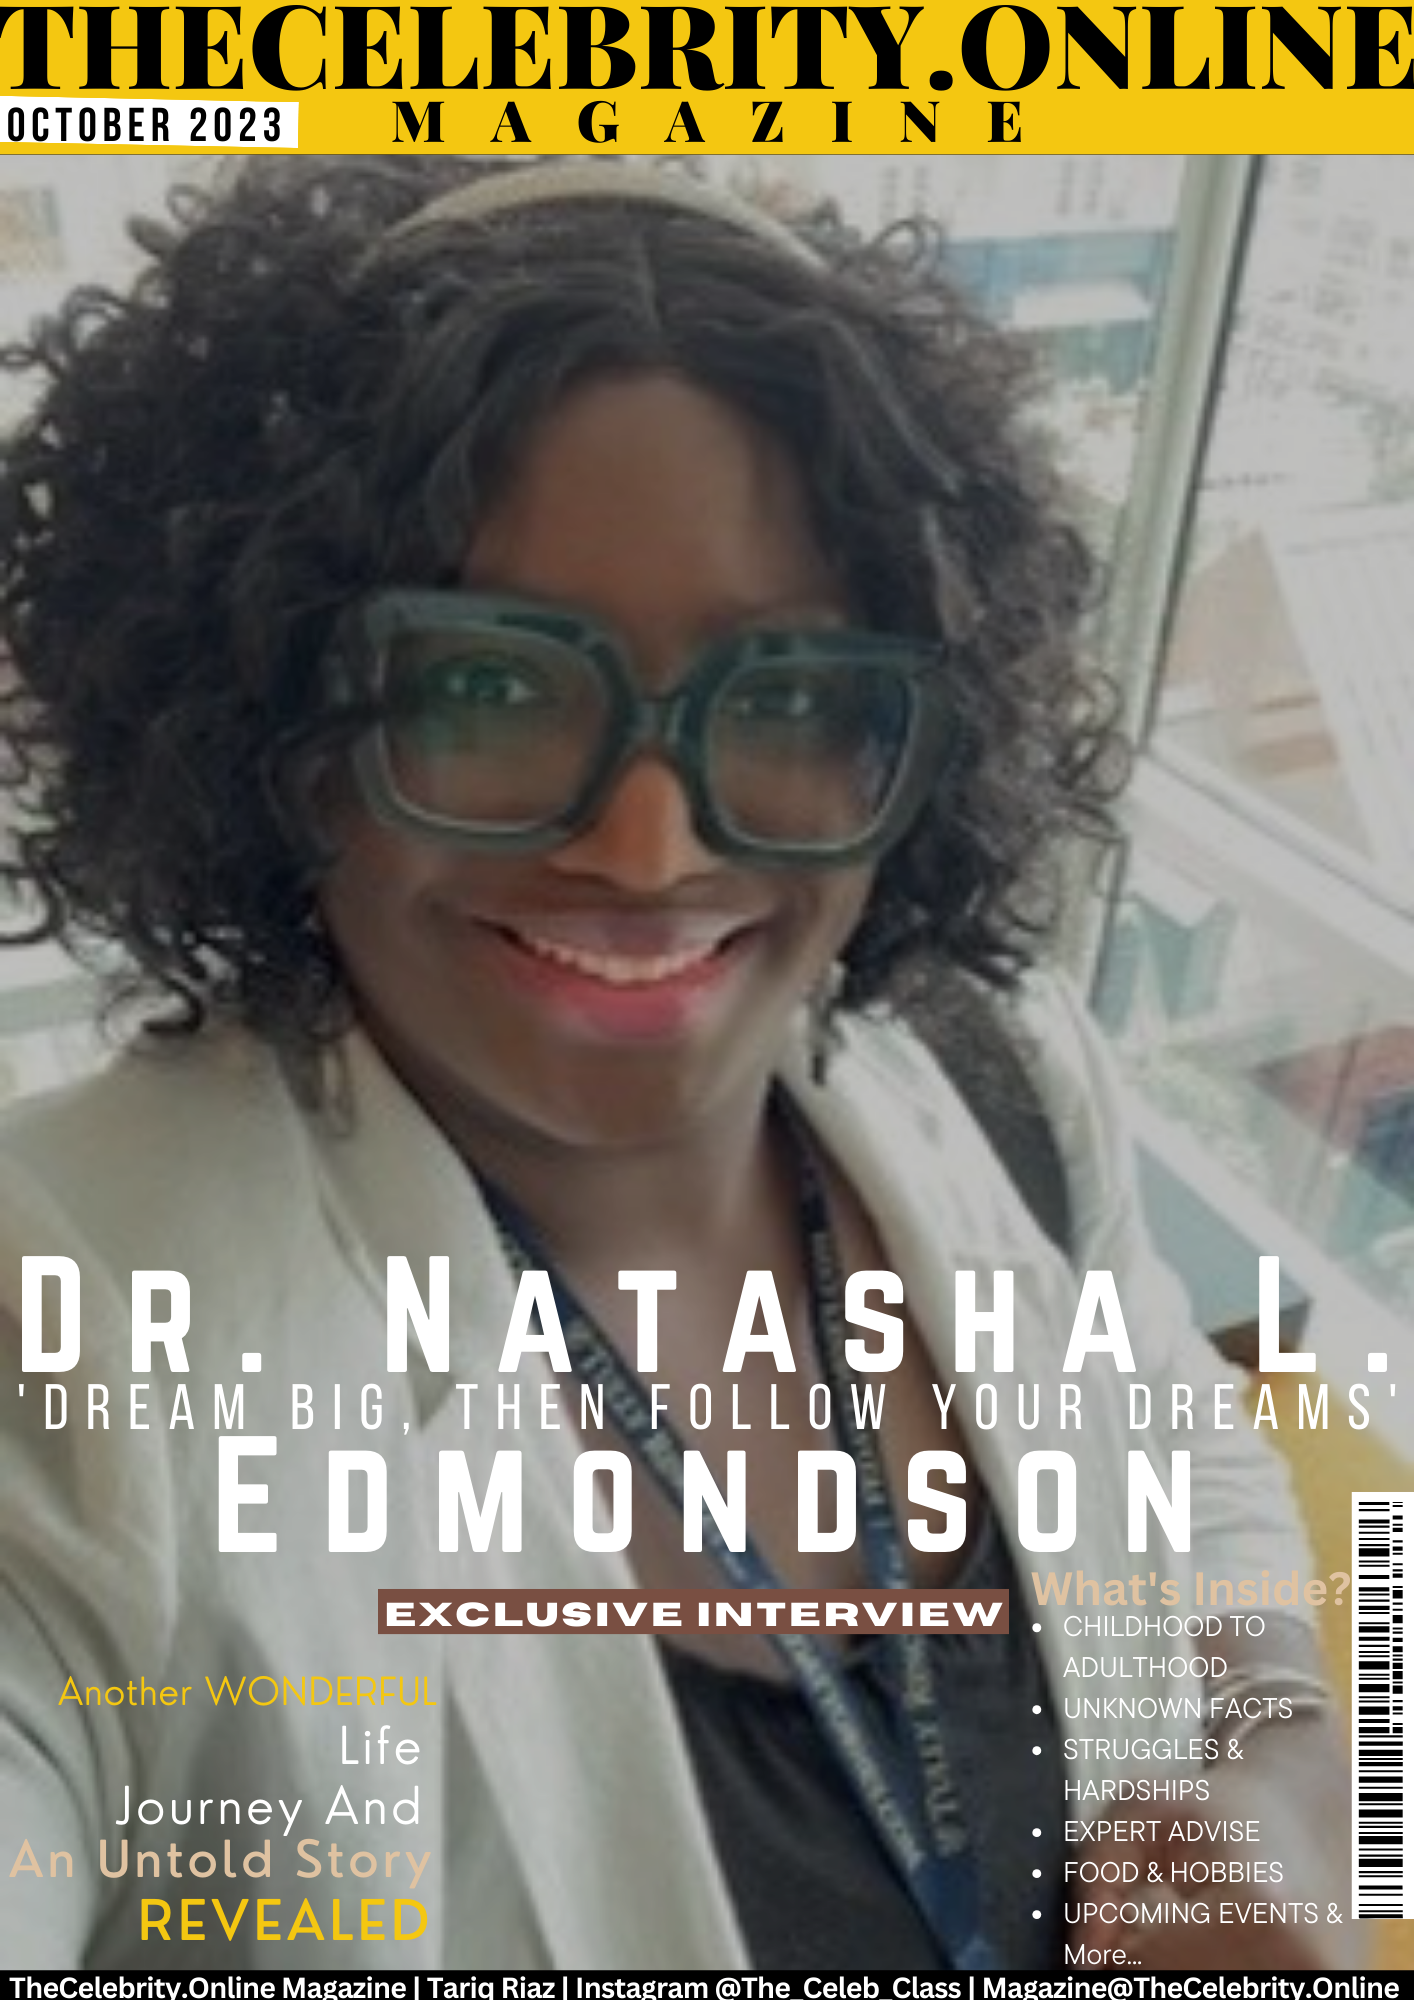 Dr. Natasha Edmondson Exclusive Interview – ‘Dream Big, Then Follow Your Dreams’